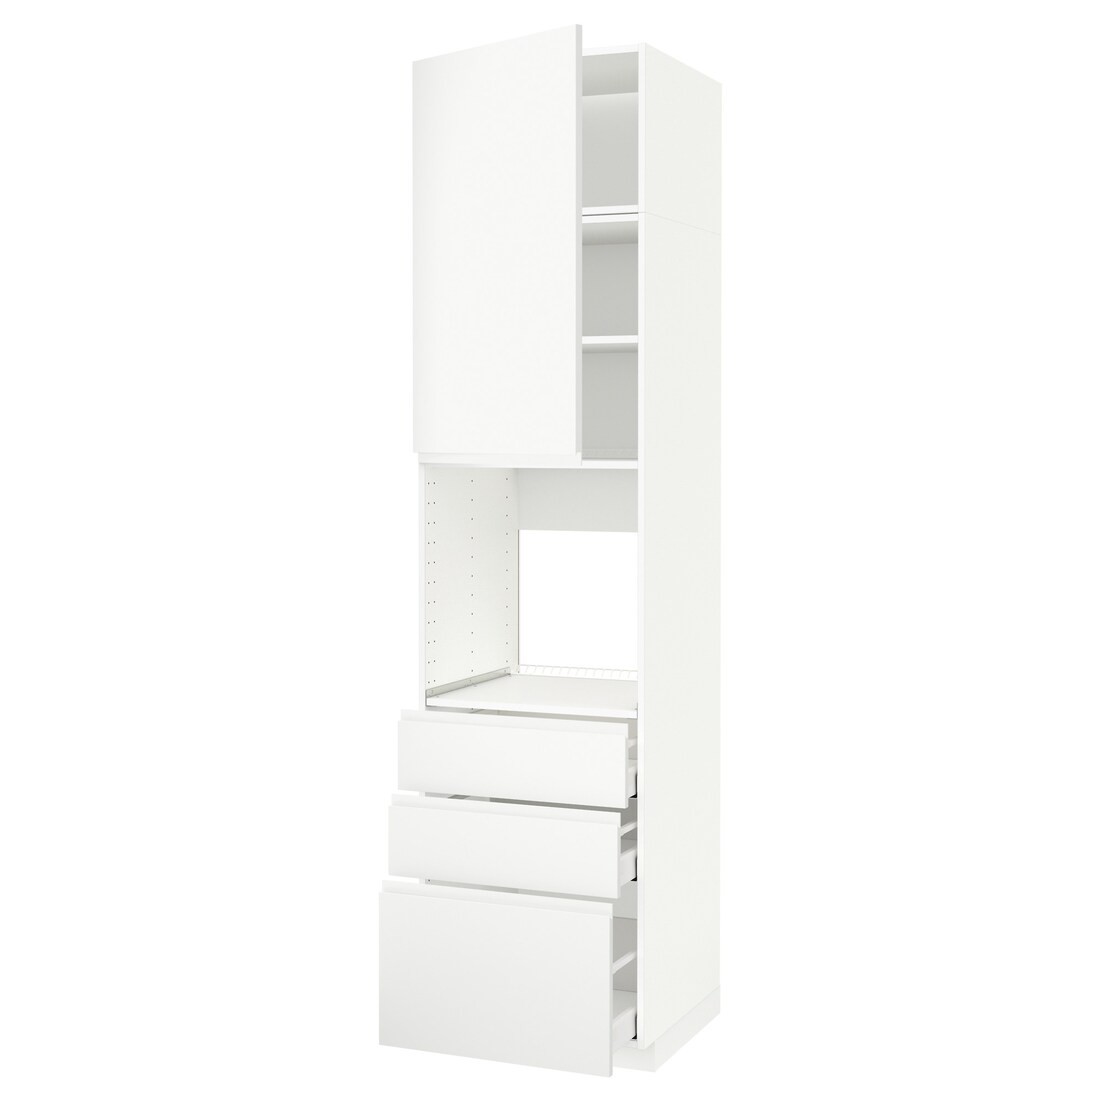 METOD МЕТОД / MAXIMERA МАКСИМЕРА Высокий шкаф для духовки, белый / Voxtorp матовый белый, 60x60x240 см